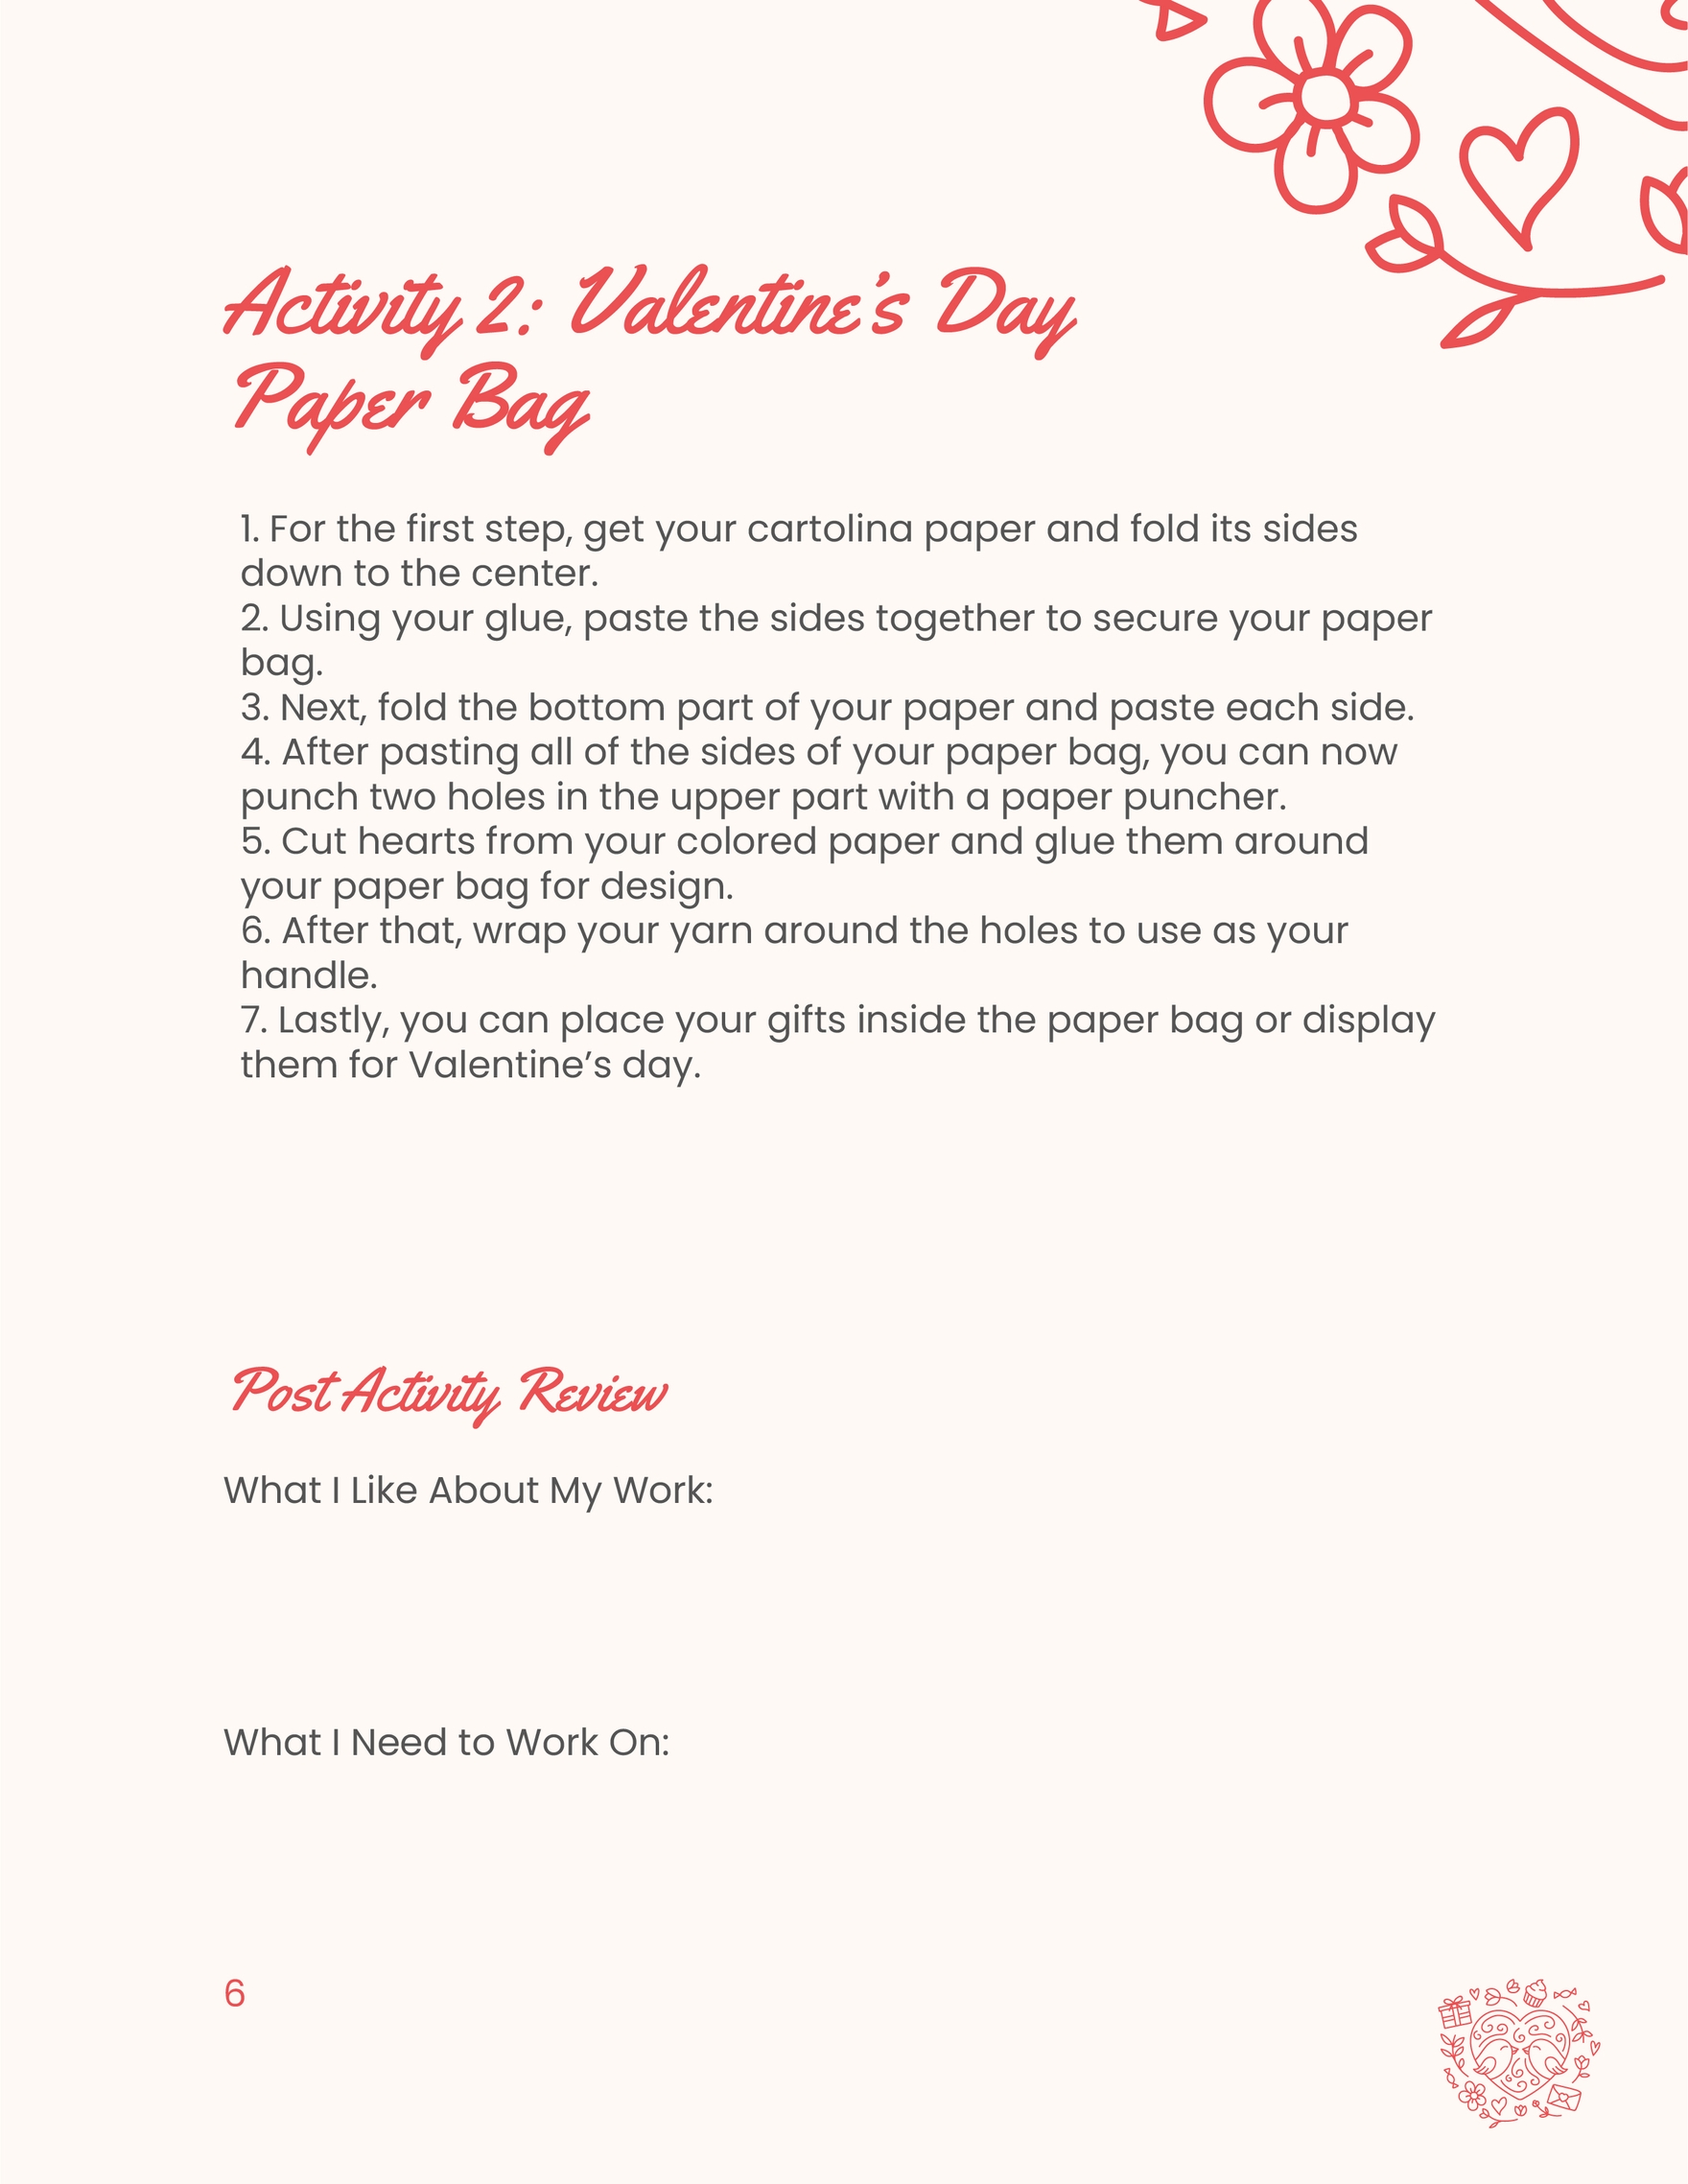 Valentines Day Activity Workbook Template